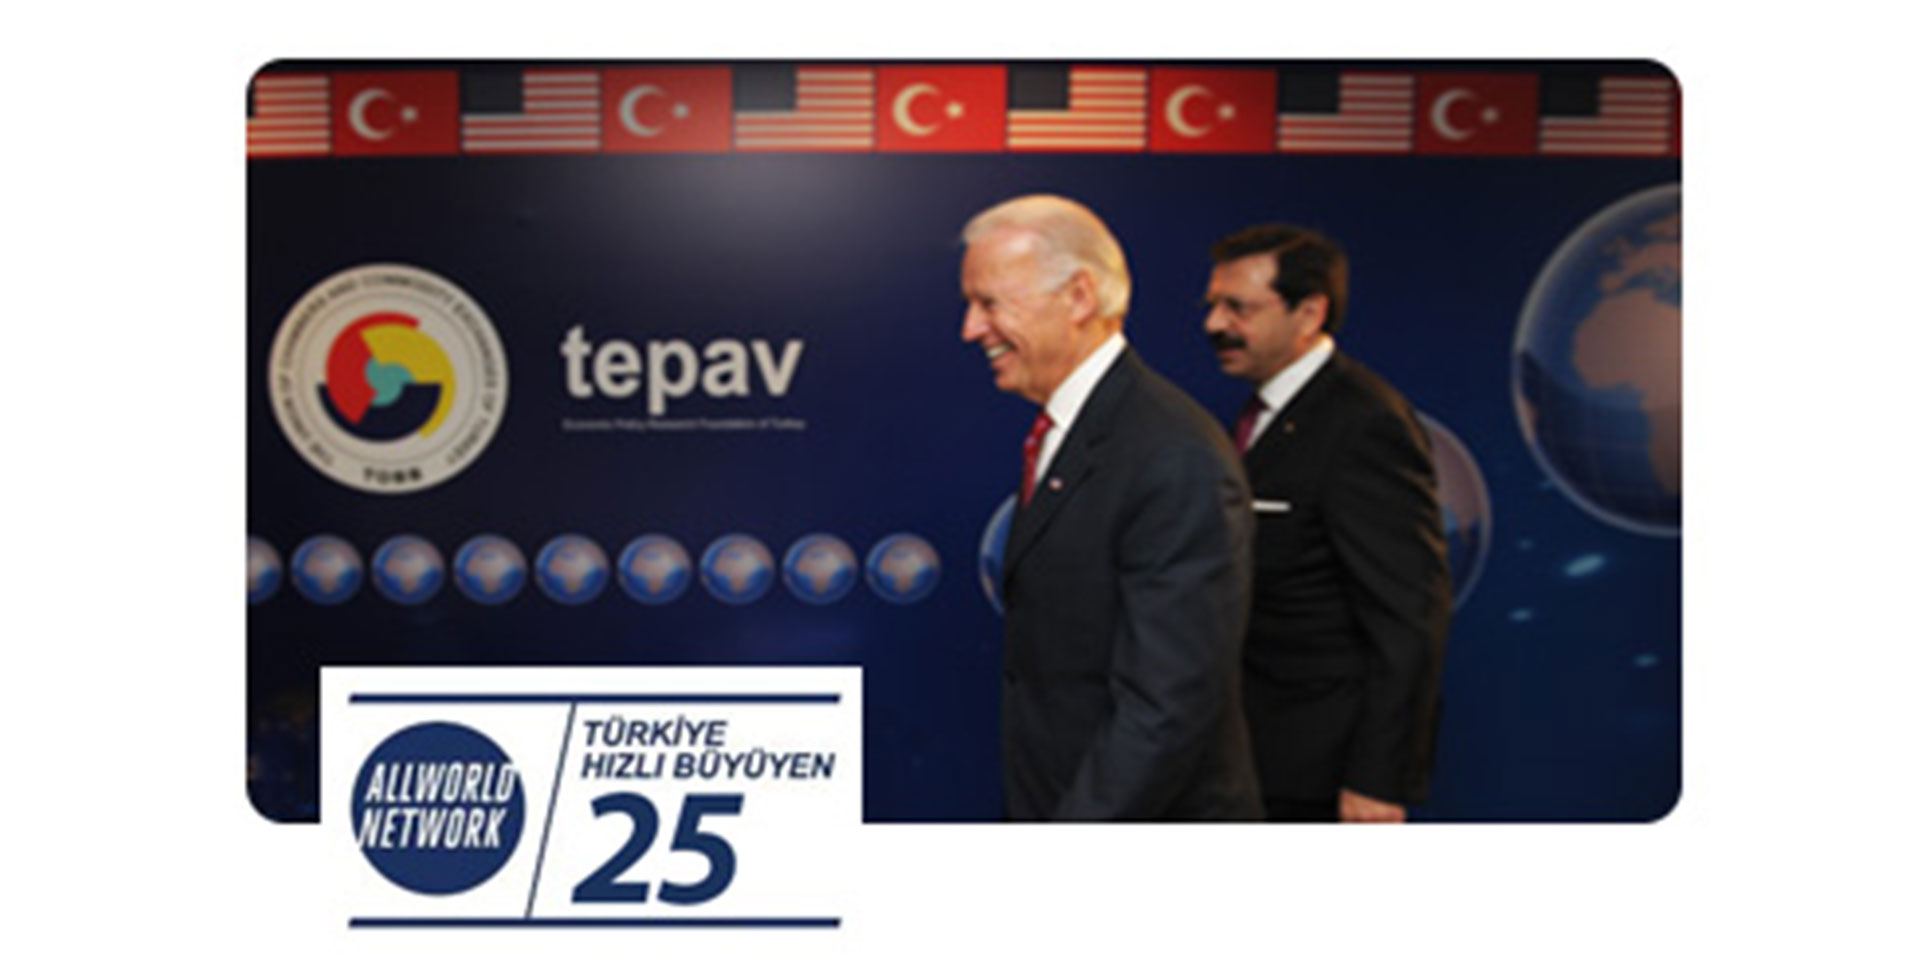 Türkiye'nin En Hızlı Büyüyen 2. Şirketi Olduk